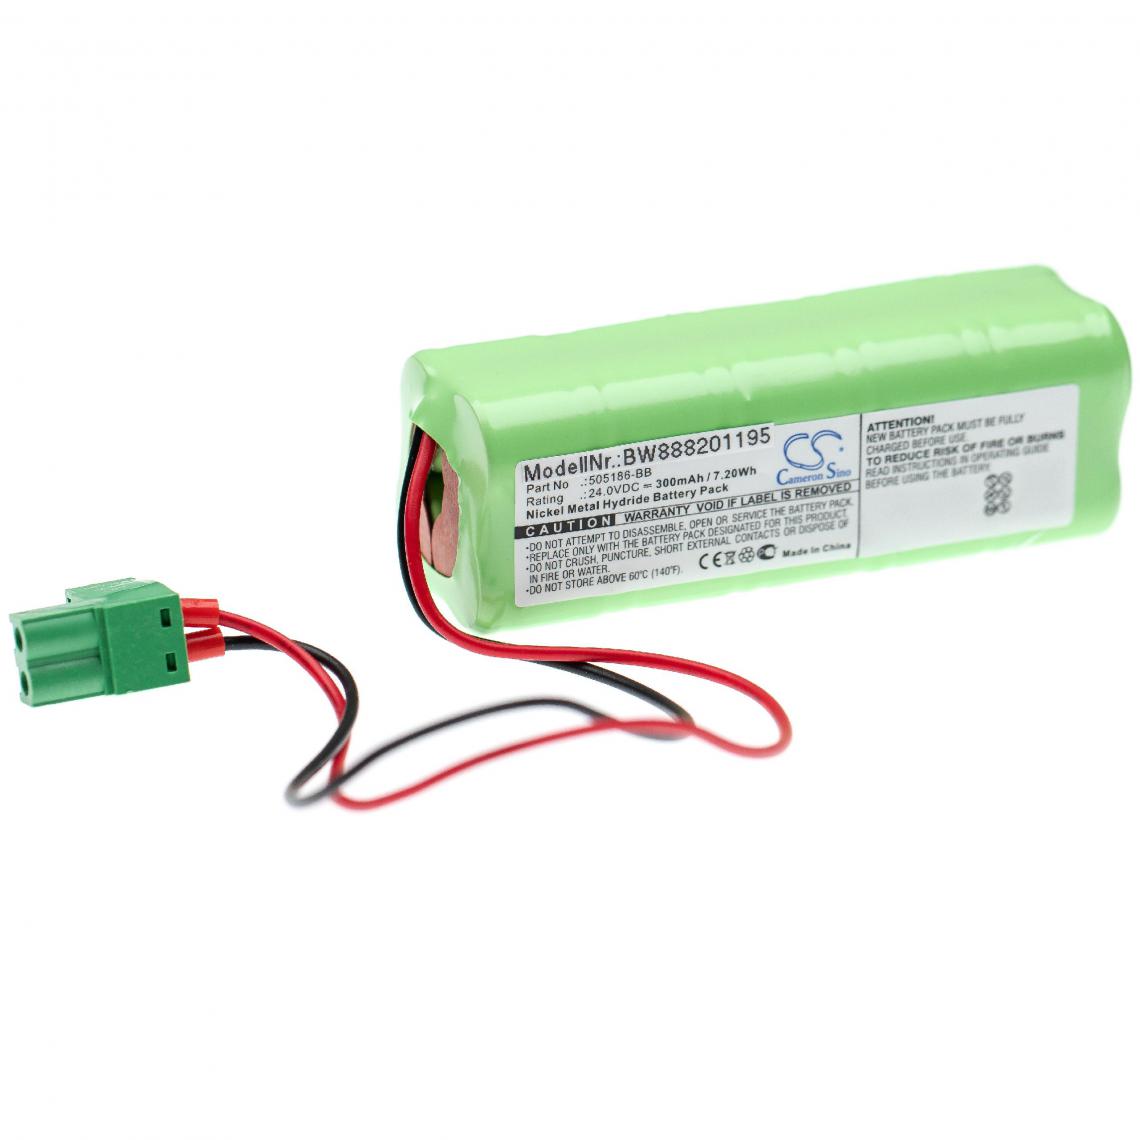 Vhbw - vhbw batterie remplace Besam 505186-BB pour porte coulissante électrique (300mAh, 24V, NiMH) - Autre appareil de mesure